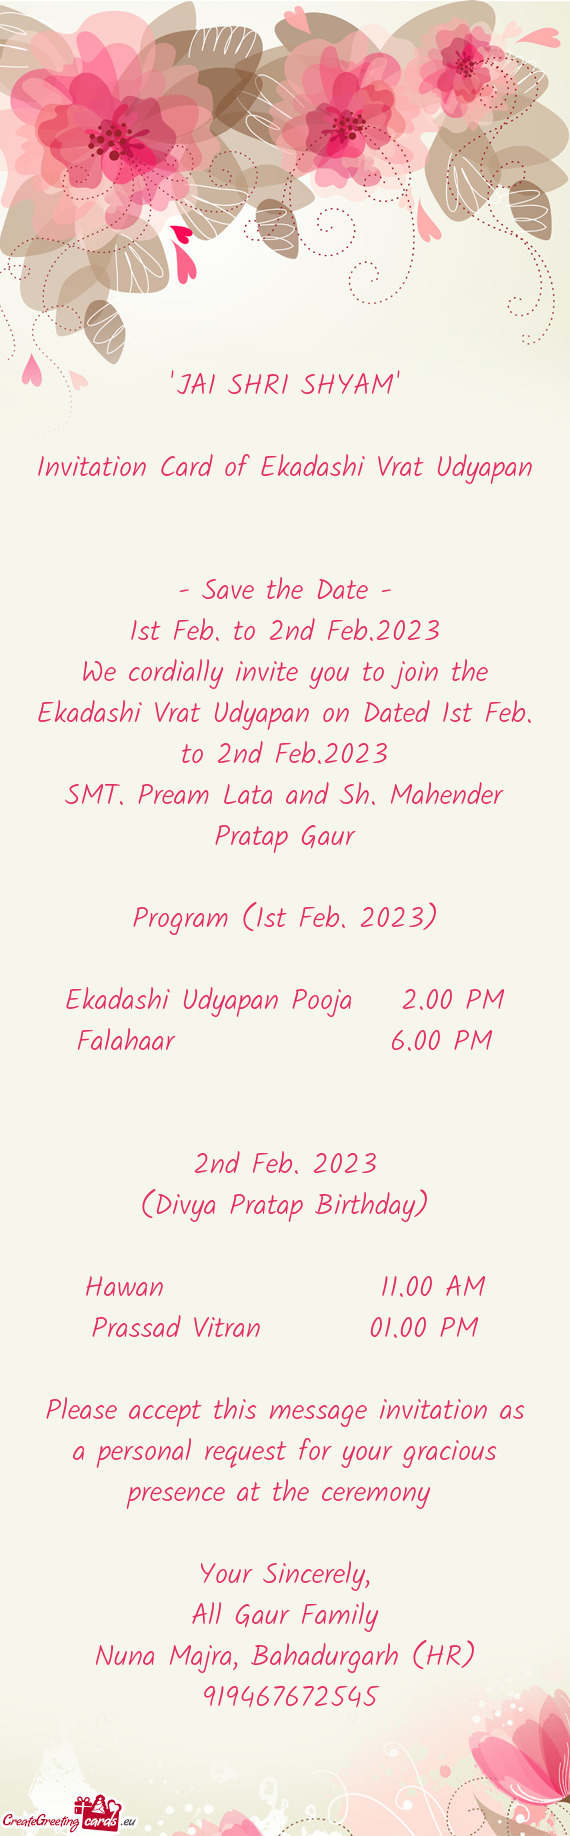 Program (1st Feb. 2023)